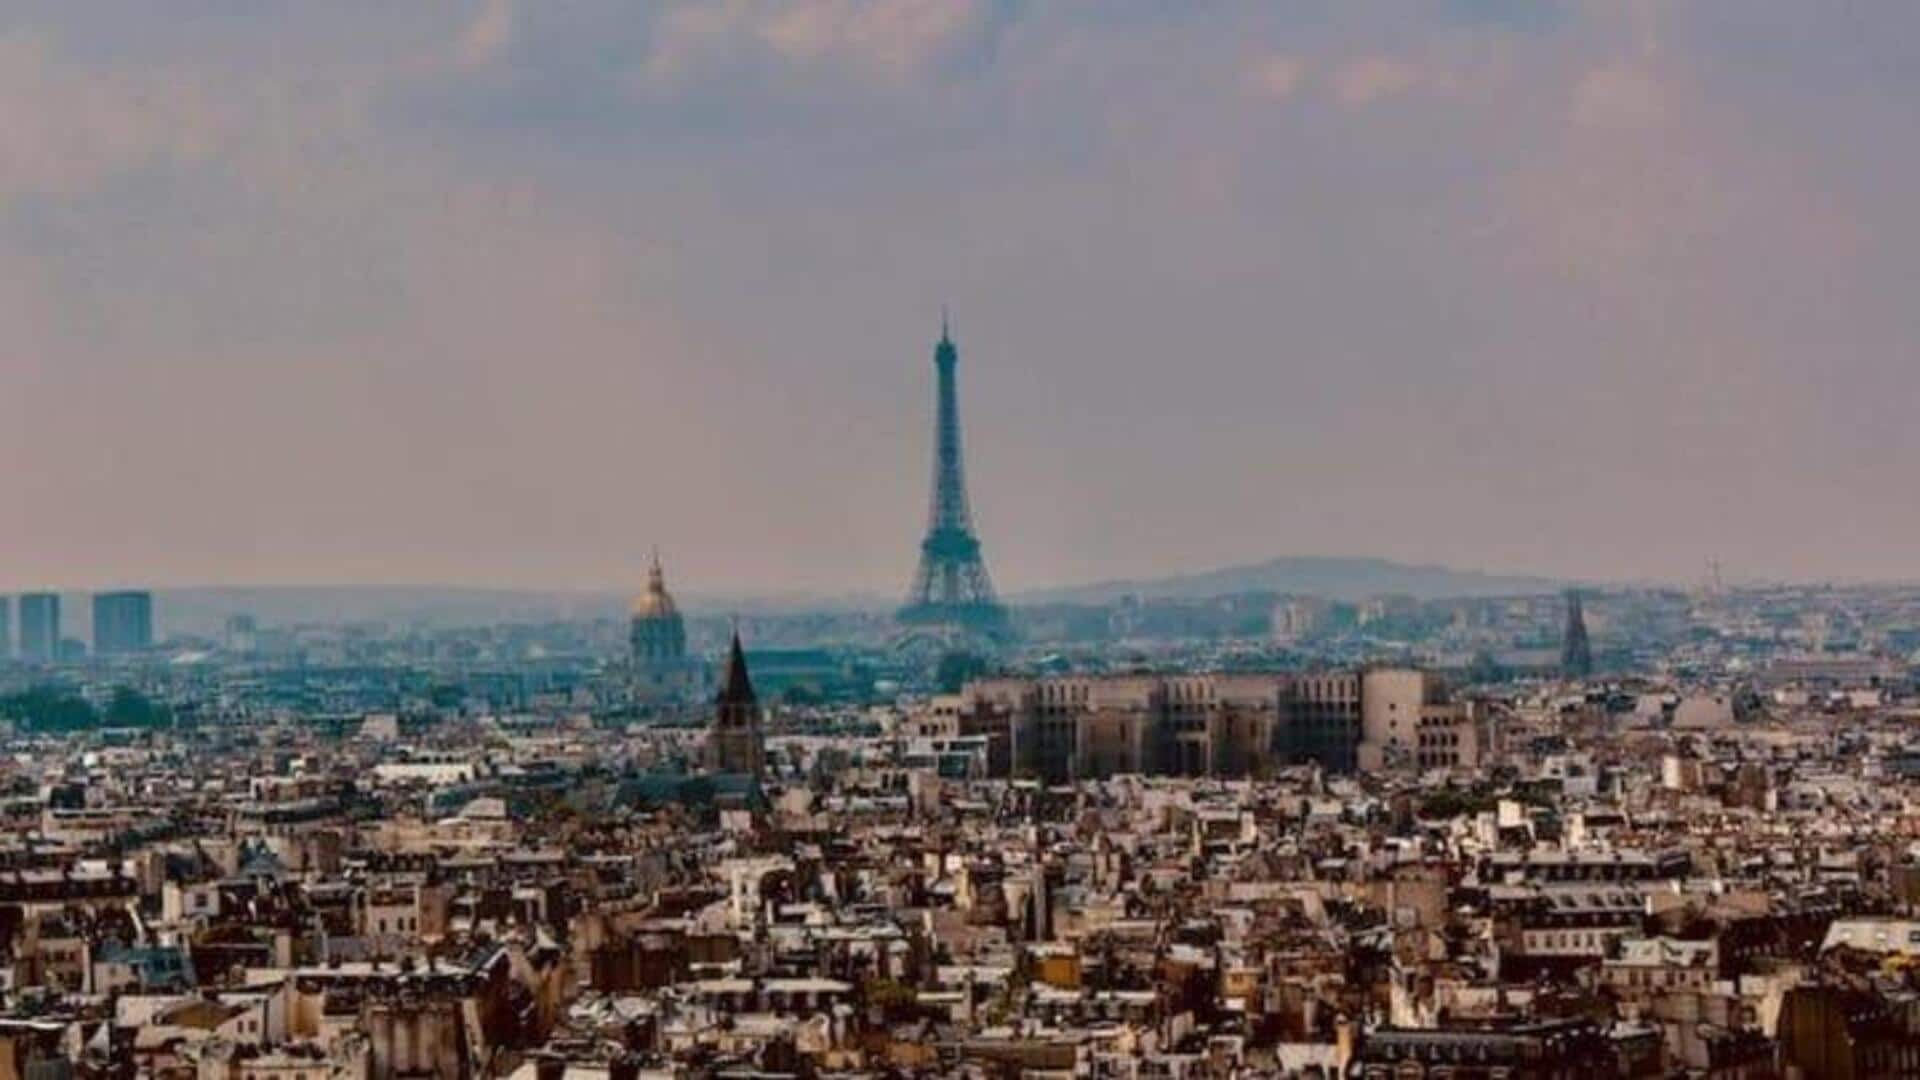 Pengalaman Unik Yang Patut Dicoba Ketika Liburan Ke Paris